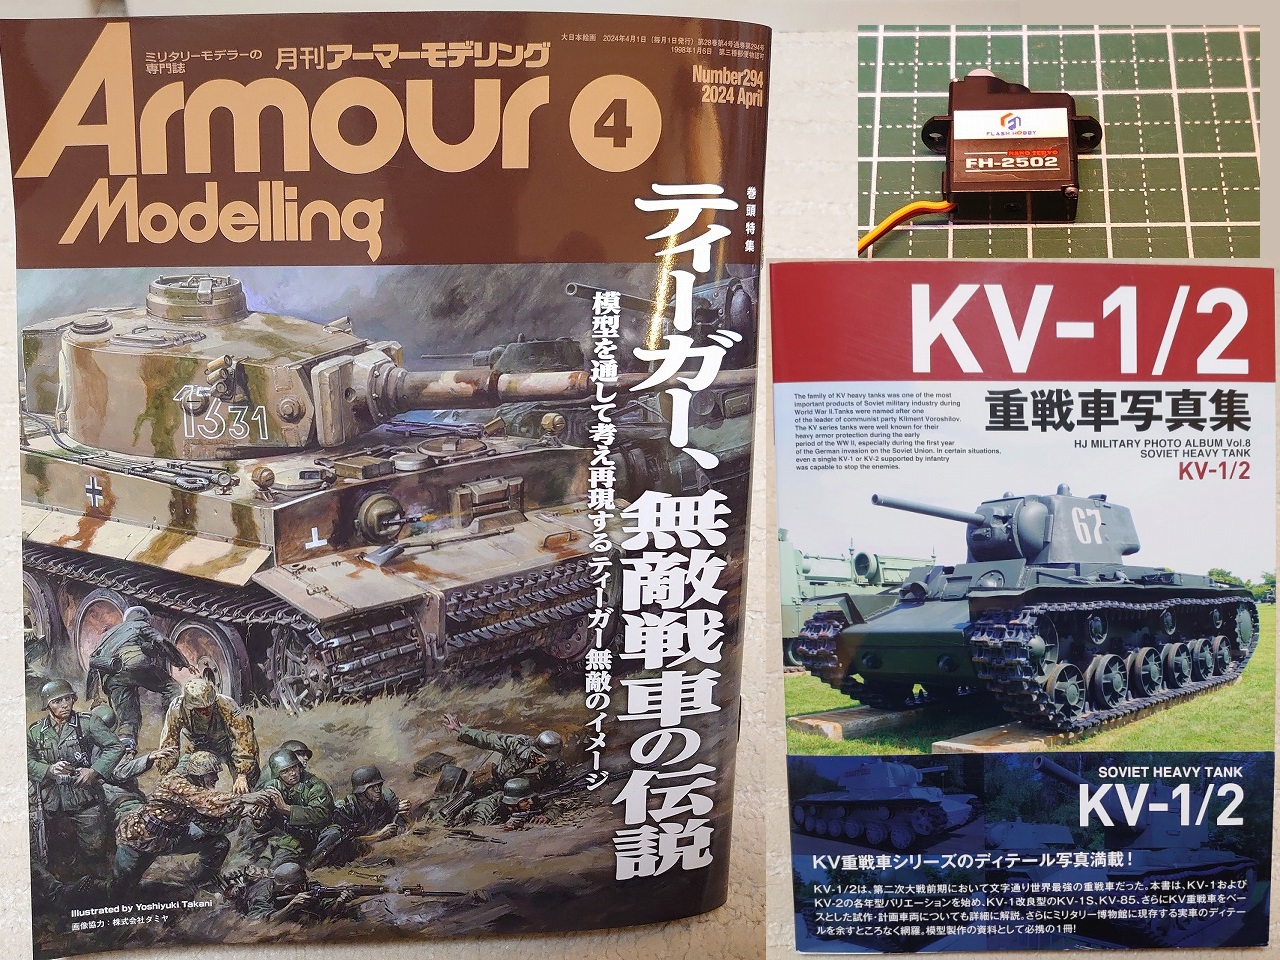 【最近購入した物】アーマーモデリング 2024年4月号とKV-1/2重戦車写真集とサーボモータ